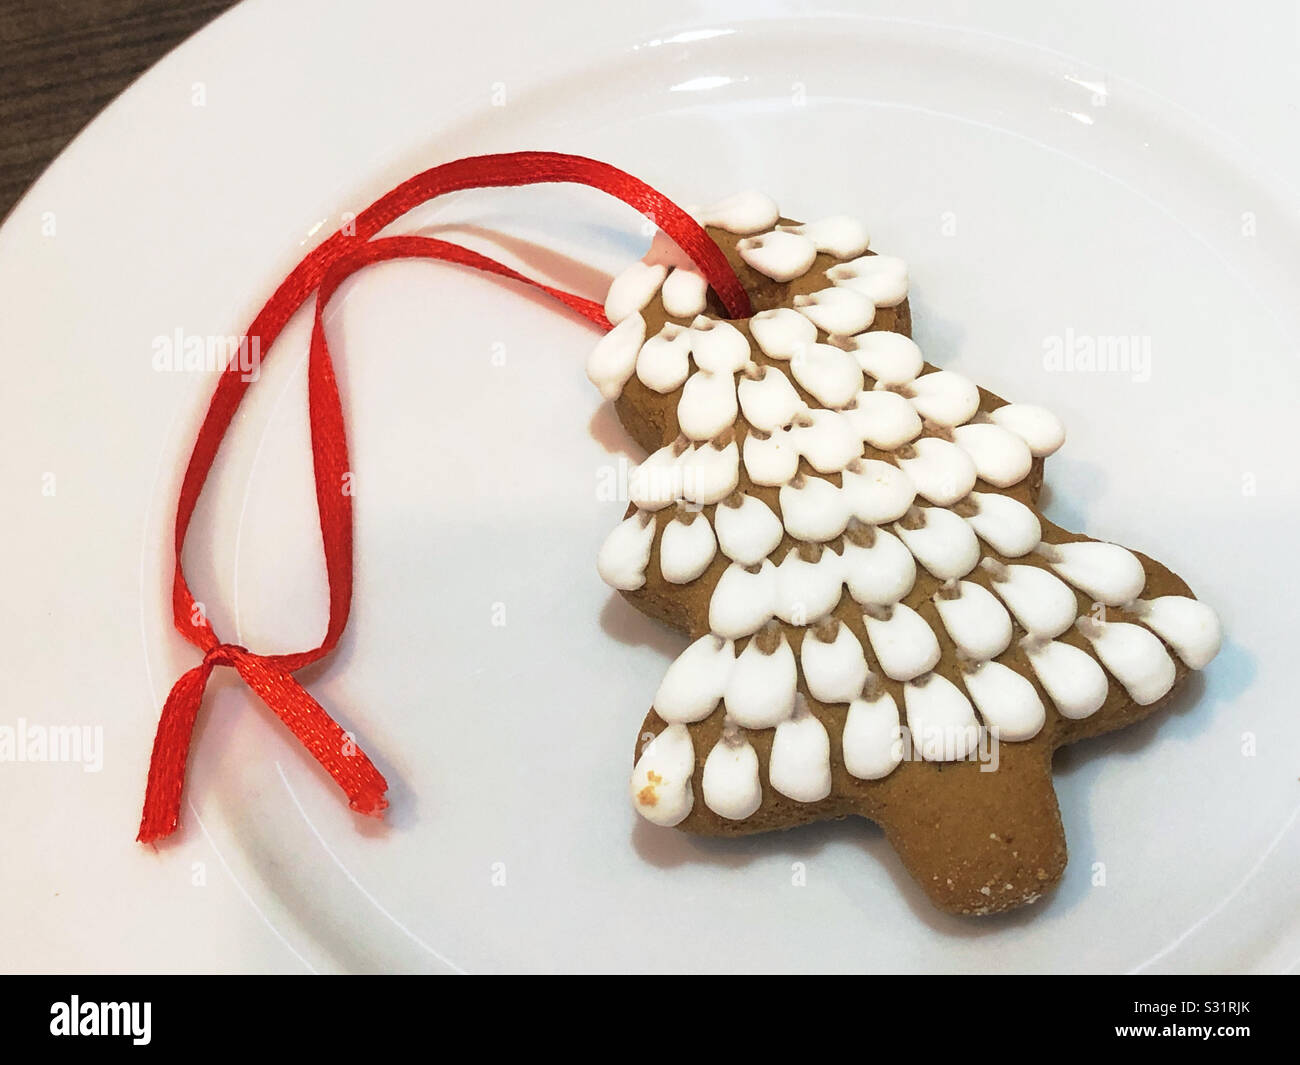 Arbre de Noël gingerbread cookie ornement de l'Ukraine avec ruban rouge pour l'accrocher sur l'arbre de Noël. Banque D'Images